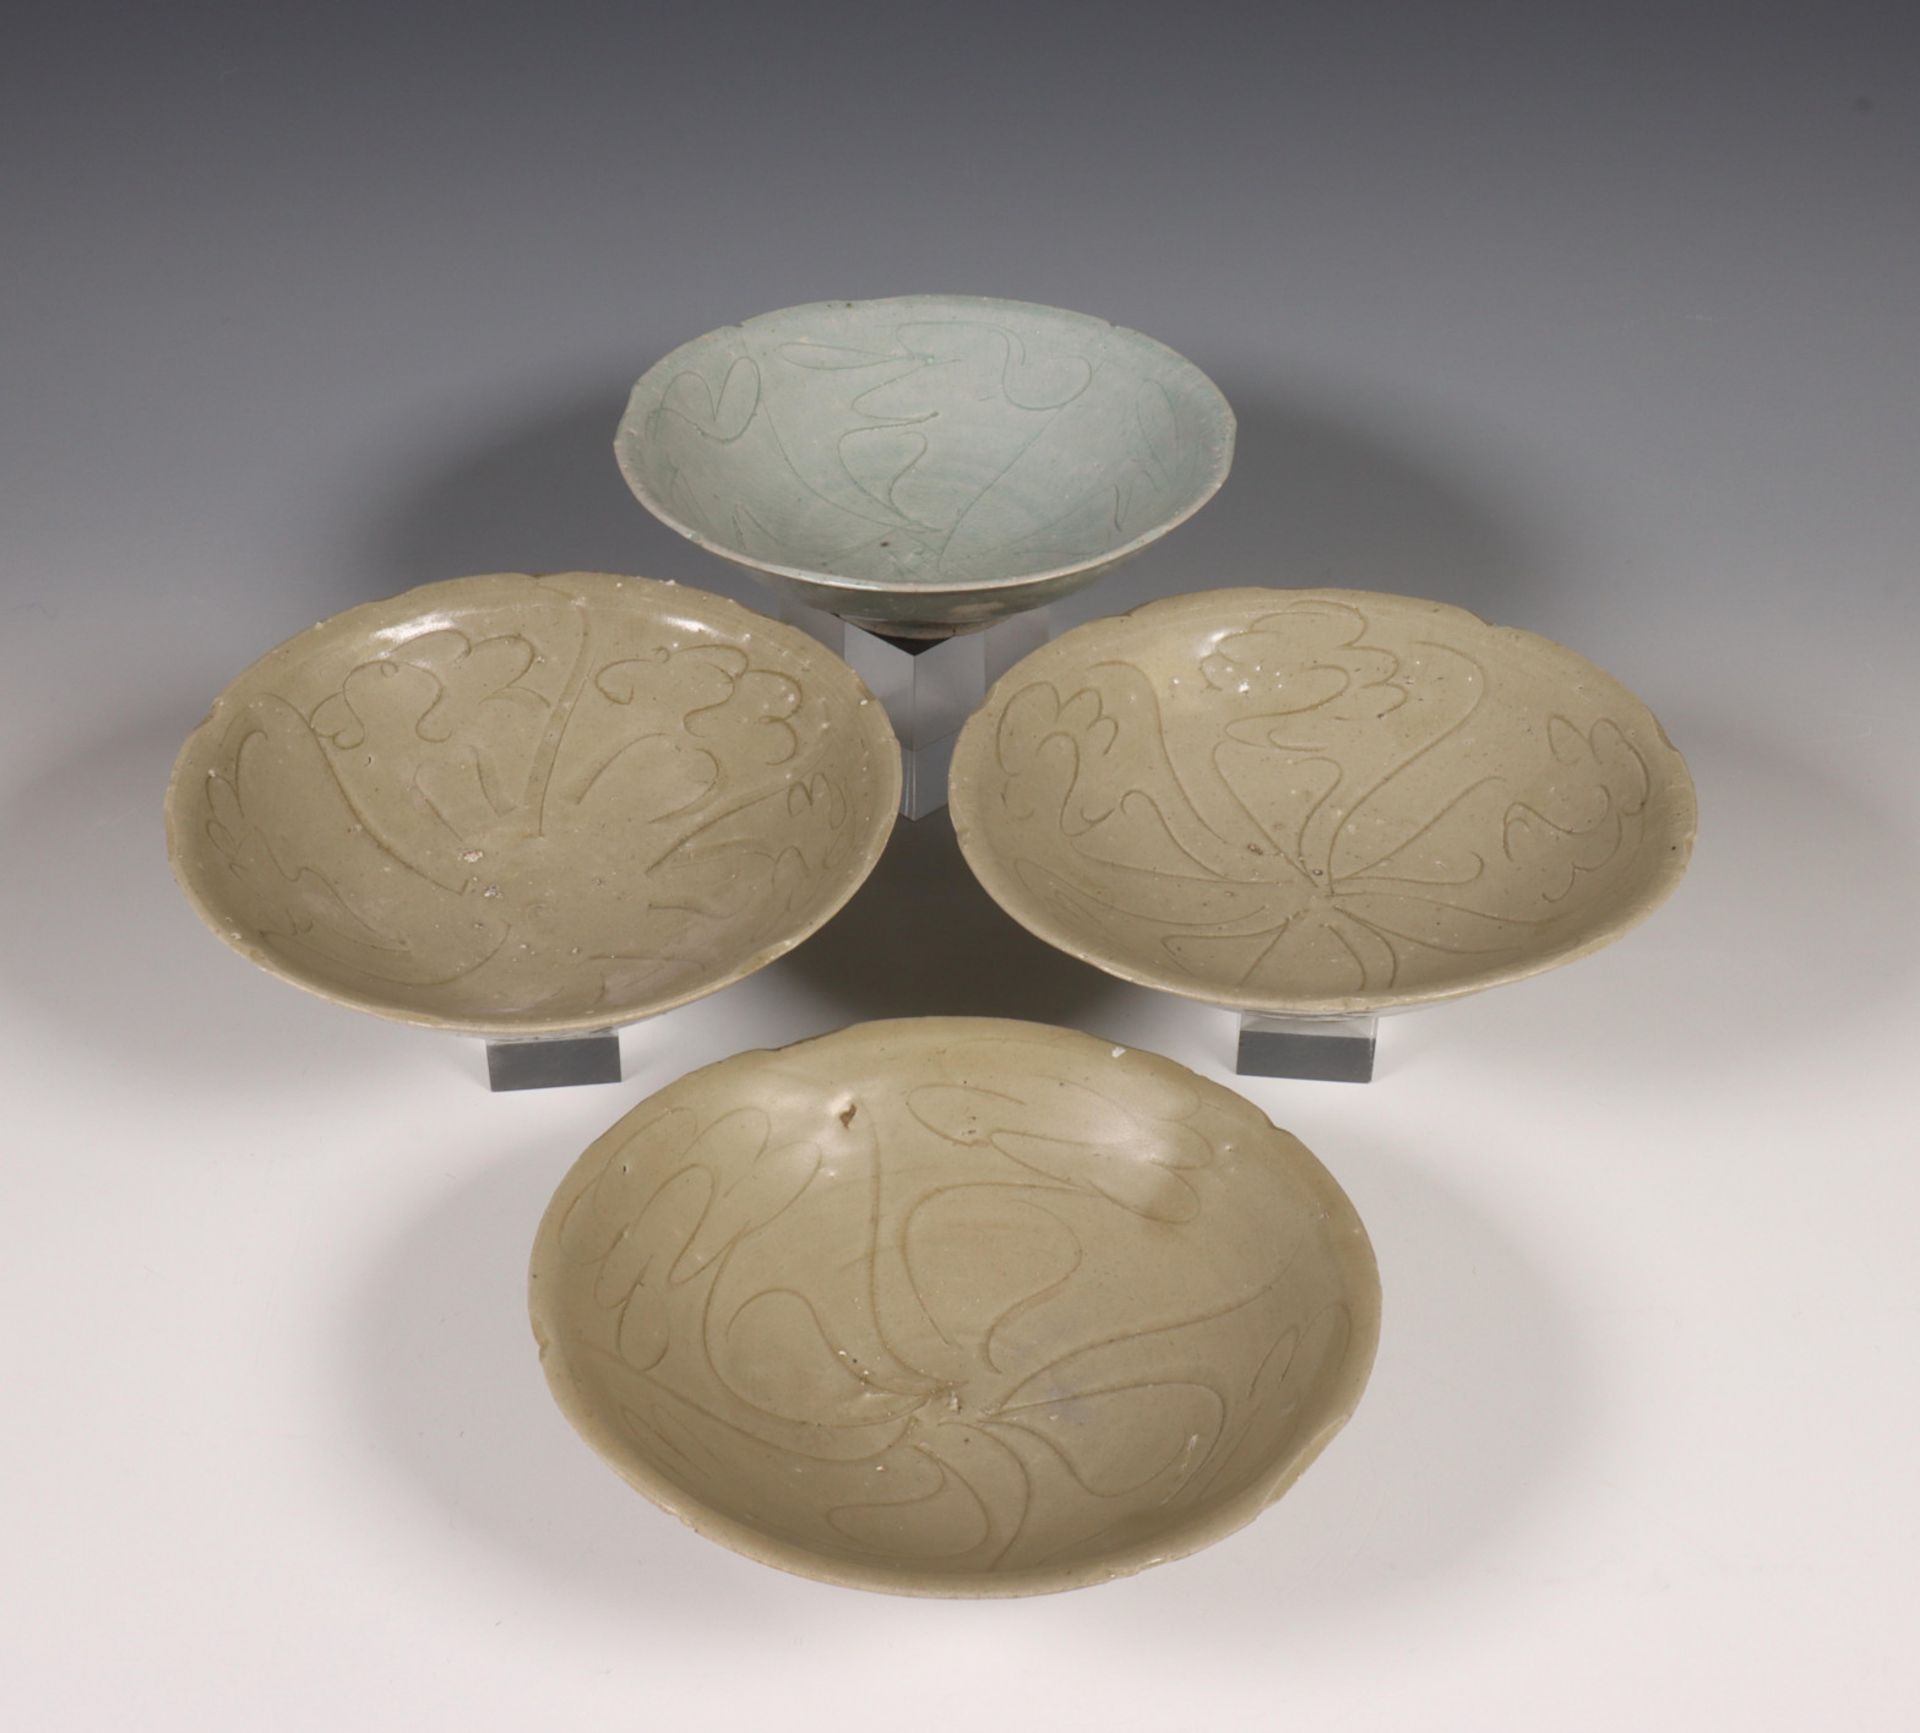 China, drie celadon en een blauwgrijs geglazuurde kom, Noordelijke Song dynastie, 10e-12e eeuw,